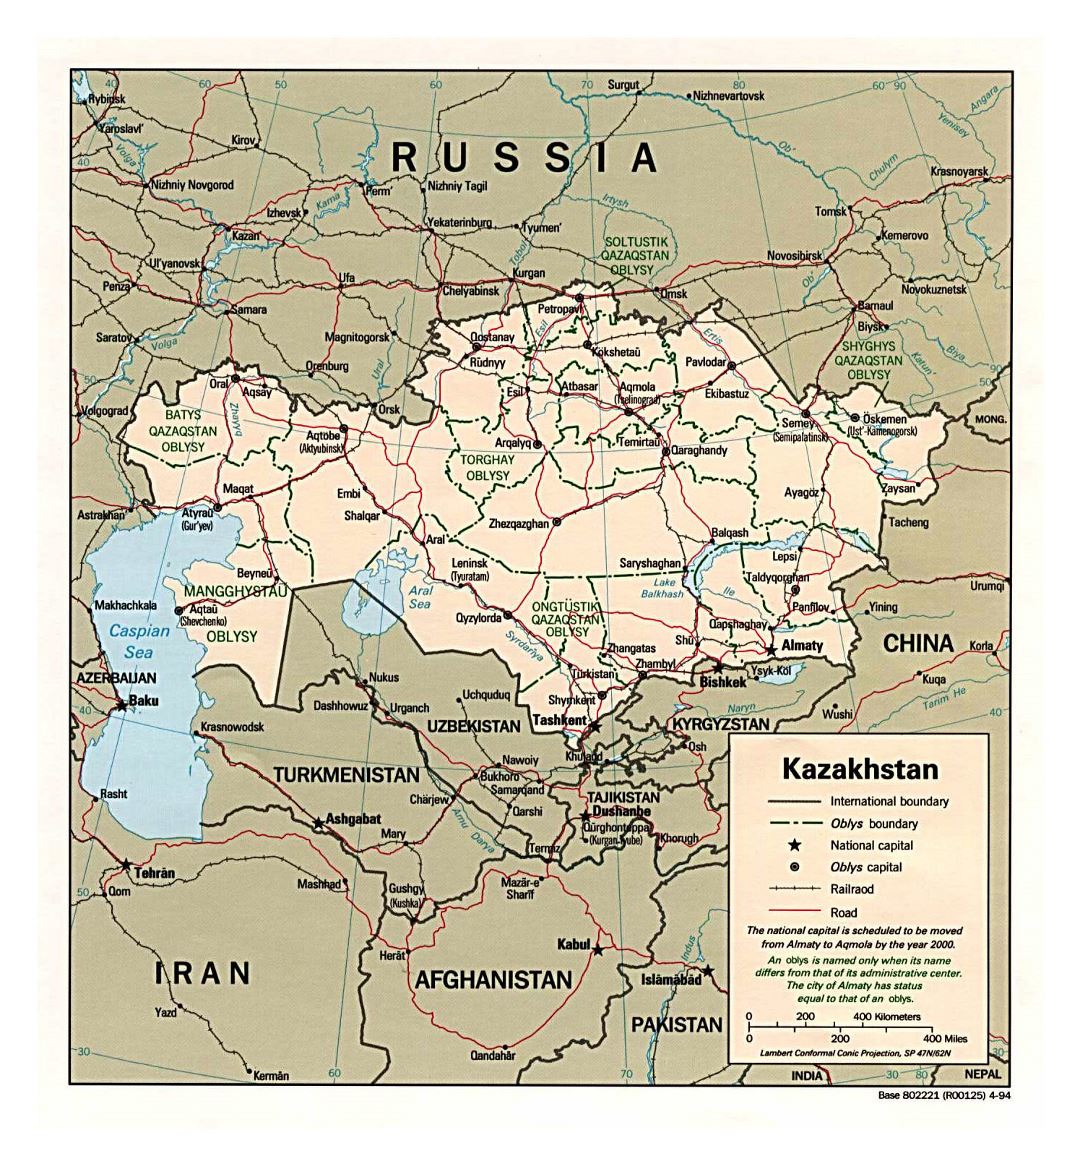 Grande mapa político y administrativo de Kazajstán con carreteras, ferrocarriles y principales ciudades - 1994